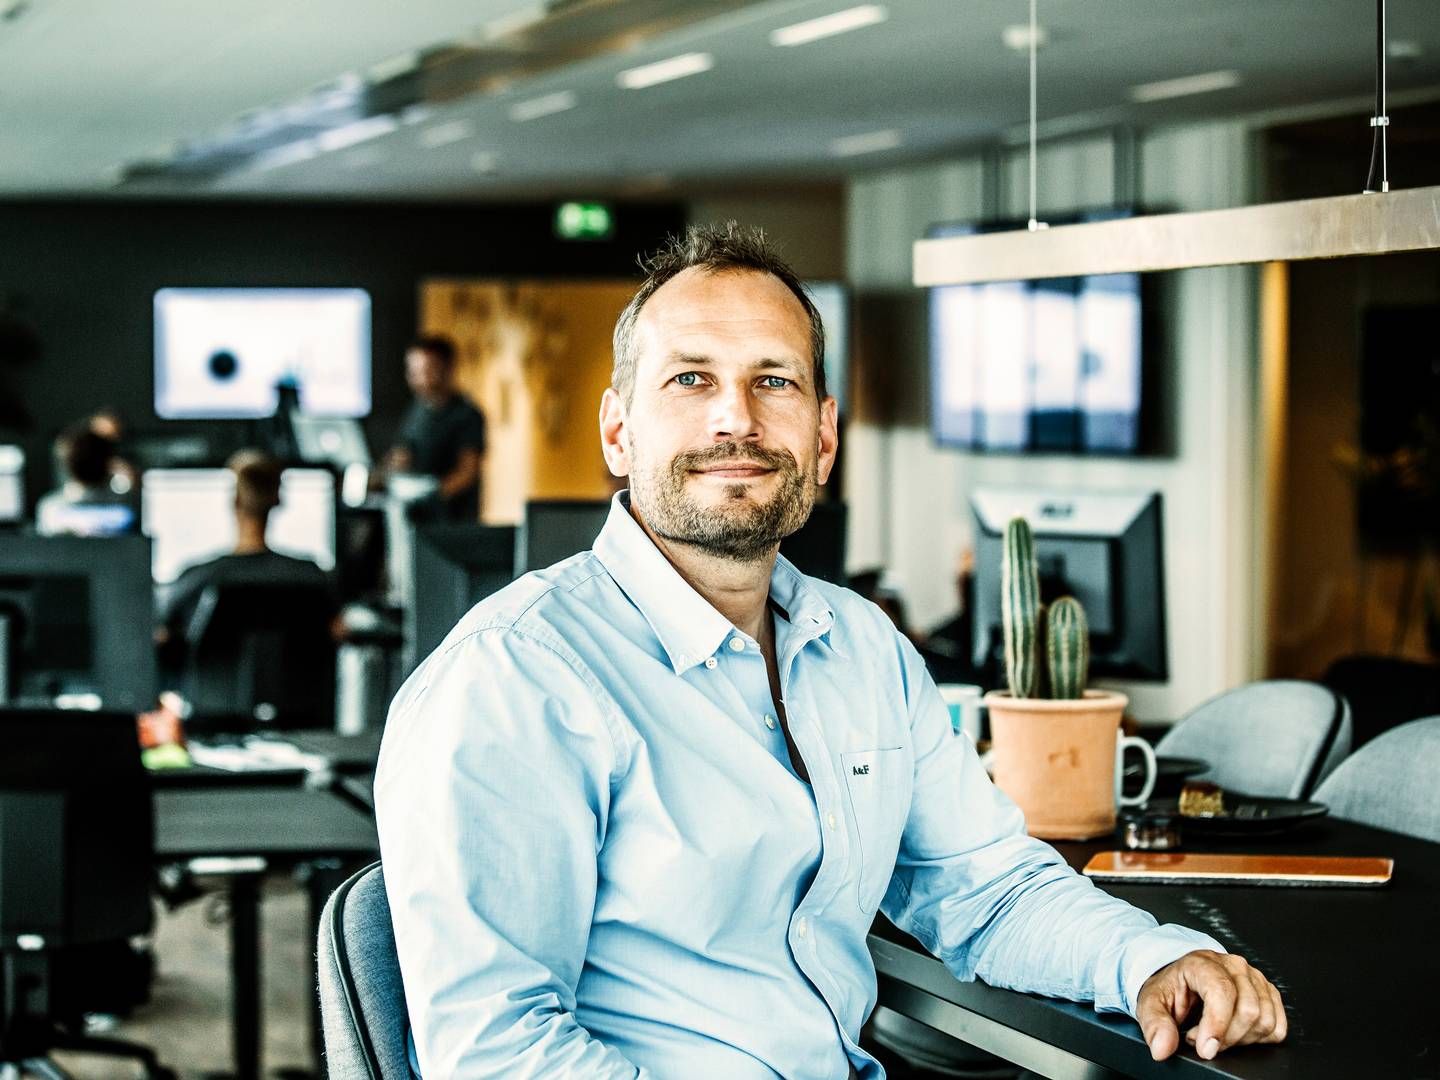 Martin Thorborg tror på, at de svære tider for små virksomheder vil styrke dem til fremtiden, når omsætningen igen vokser. | Foto: Dinero/pr